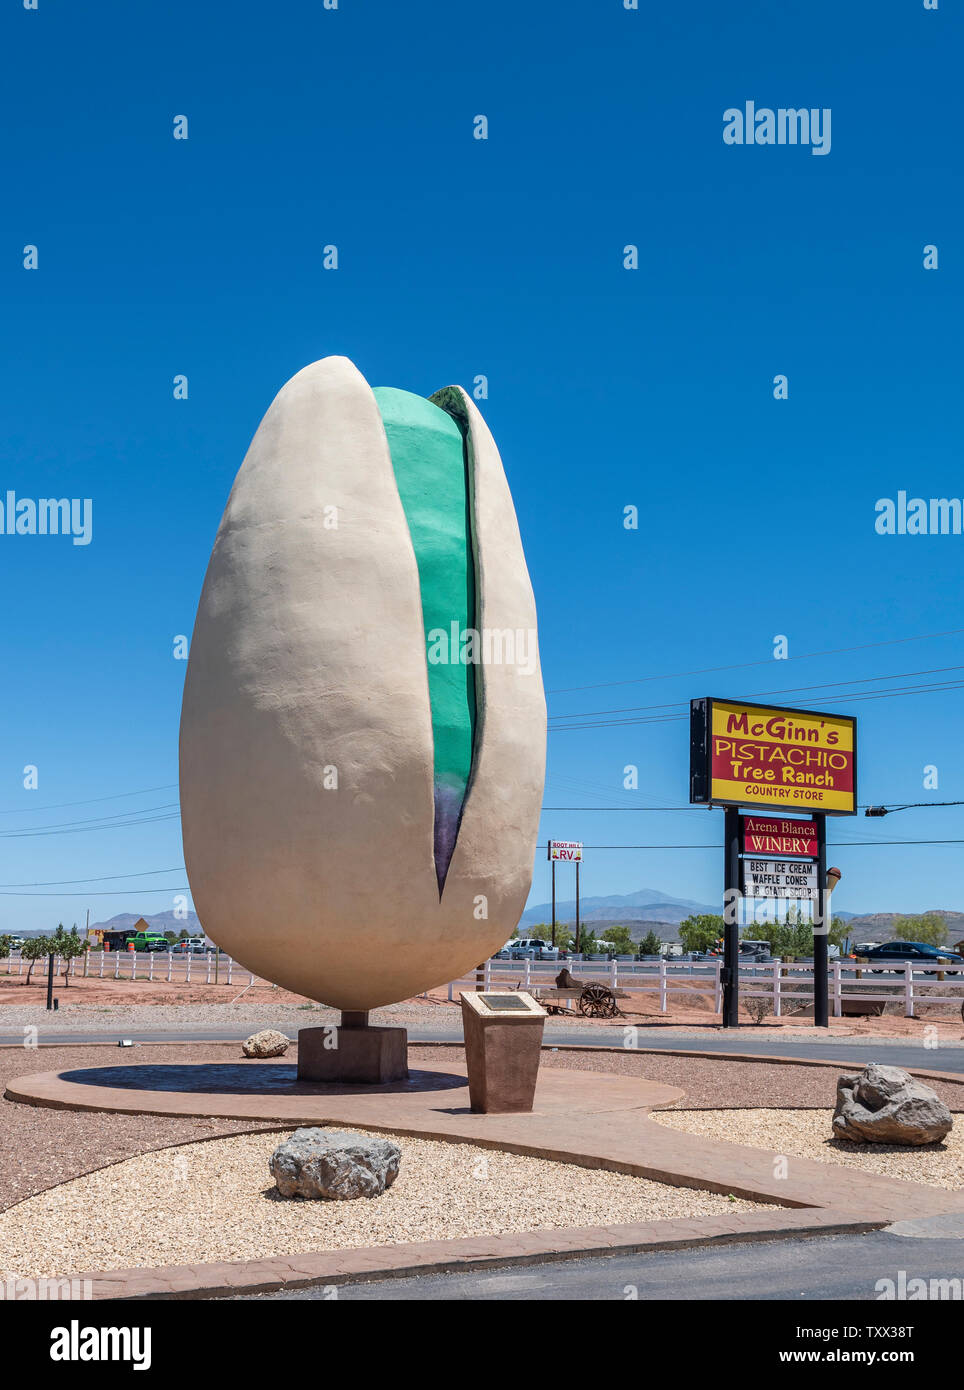 Alamogordo, Nouveau Mexique, pistache, géant plus grand roadside attraction à McGinns pistache Pistache du Ranch. Banque D'Images